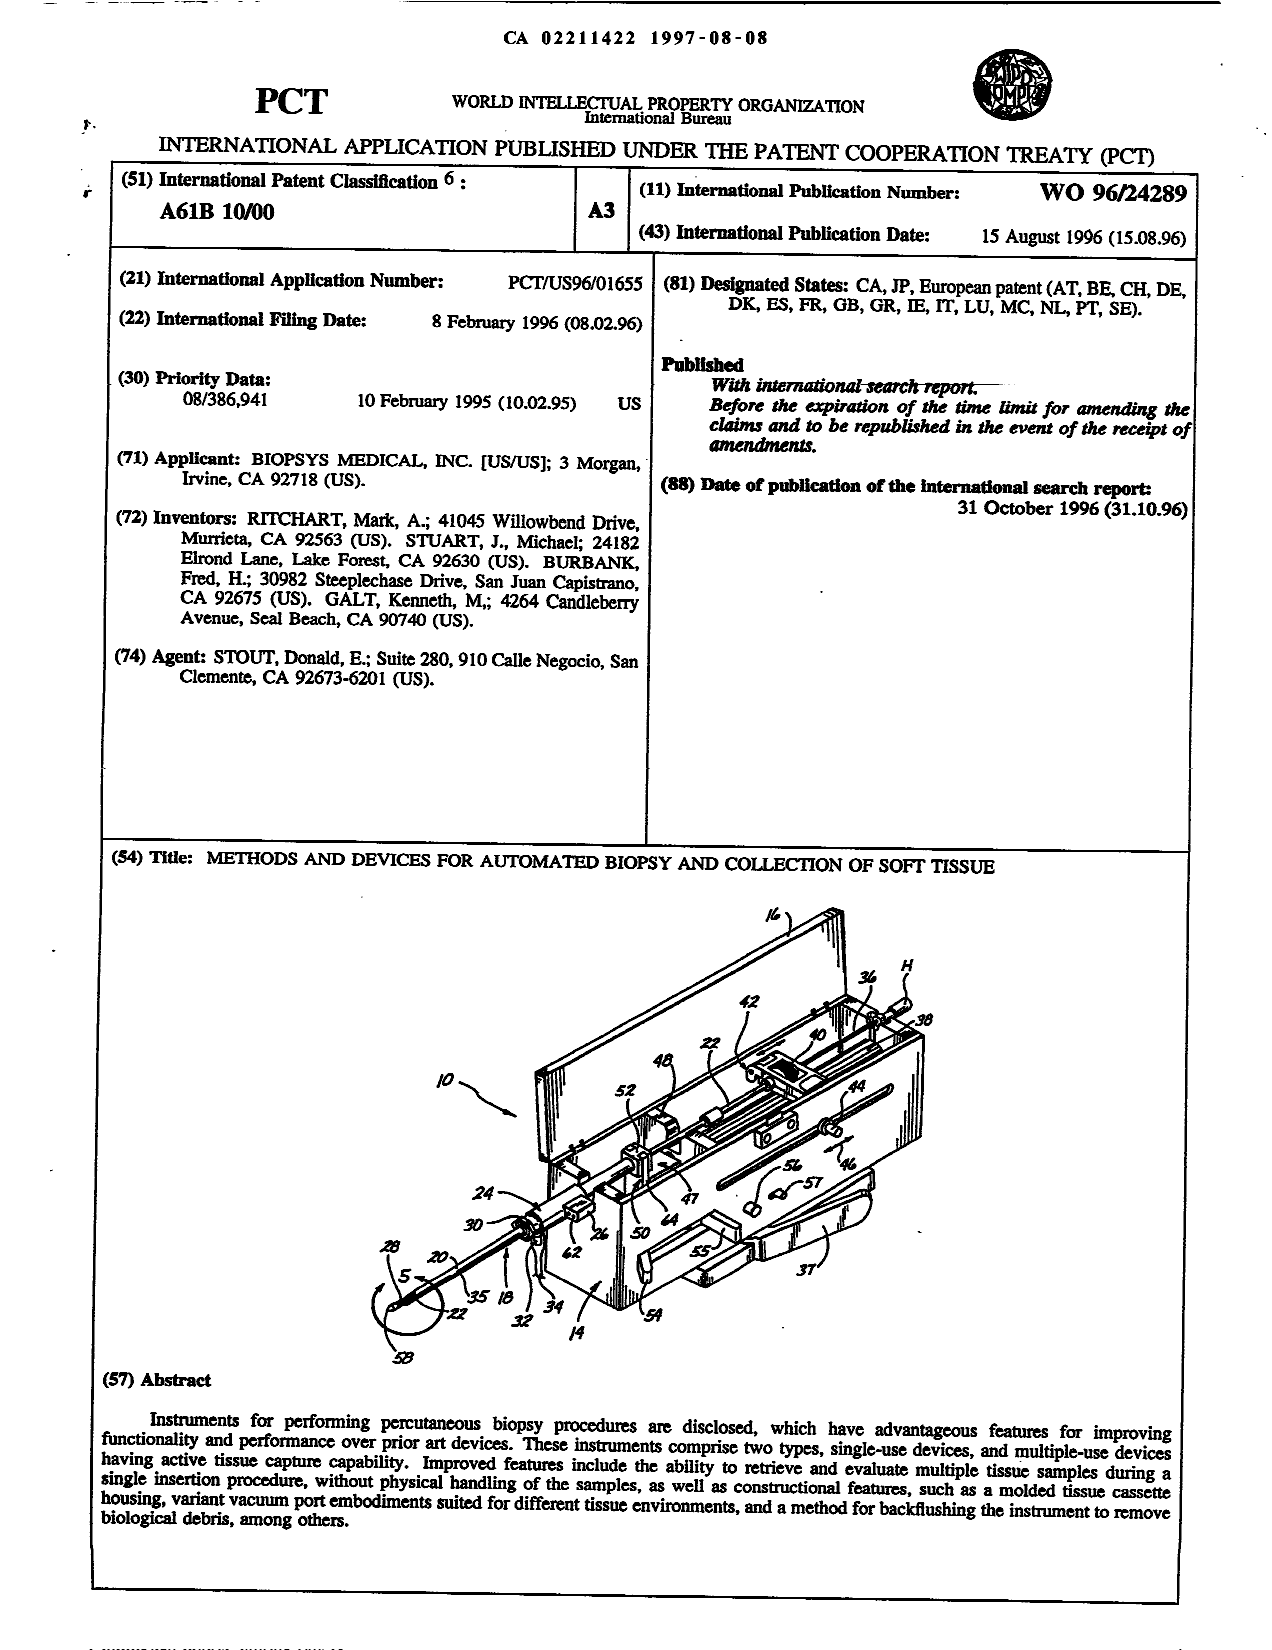 Document de brevet canadien 2211422. Abrégé 19970808. Image 1 de 1